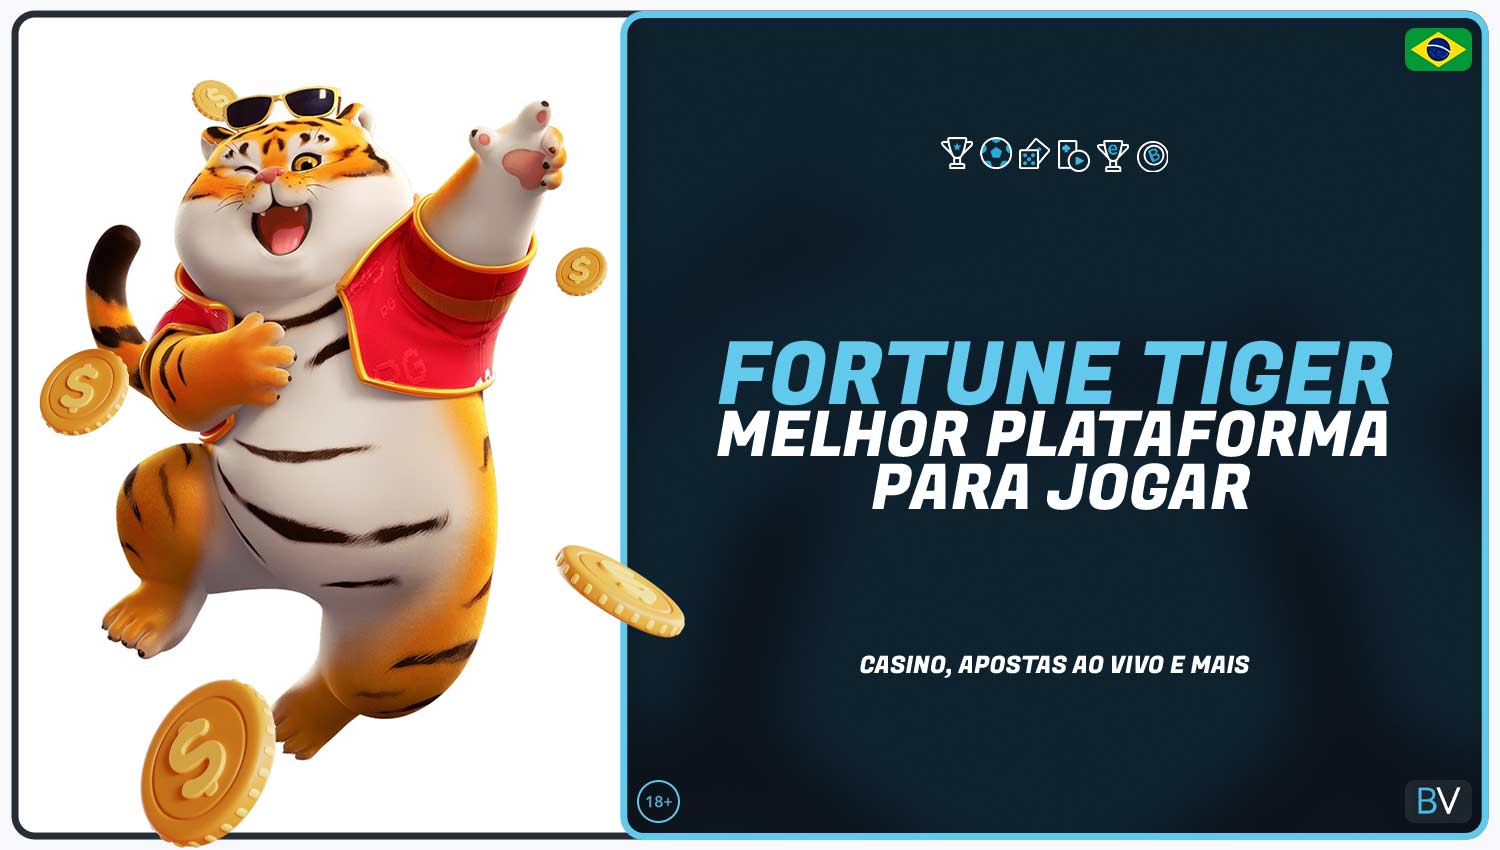 Breve informação sobre o jogo Fortune Tiger na plataforma Betvictor.